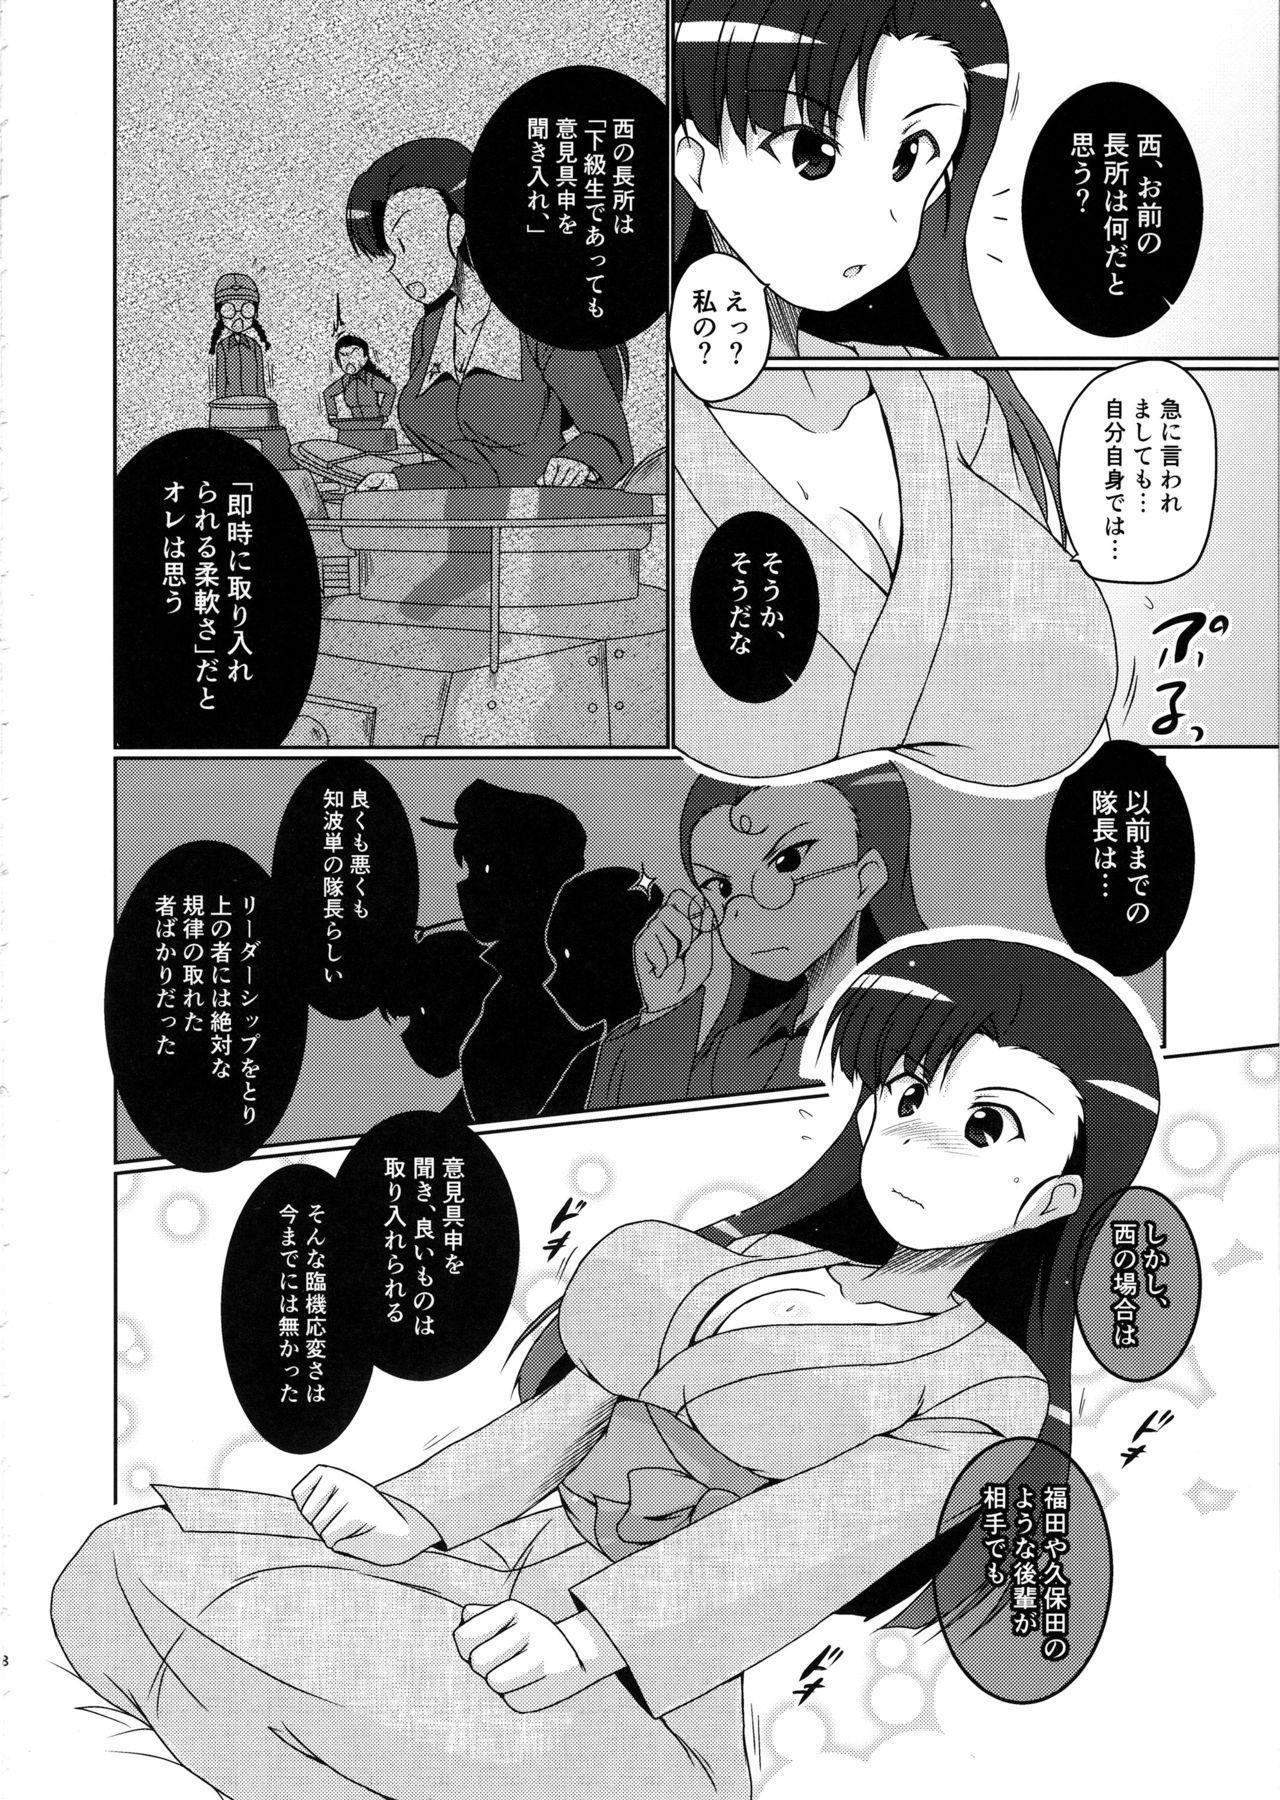  Nishi Taichou to Yoru no Senjutsu Tokkun desu! - Girls und panzer Dildos - Page 7